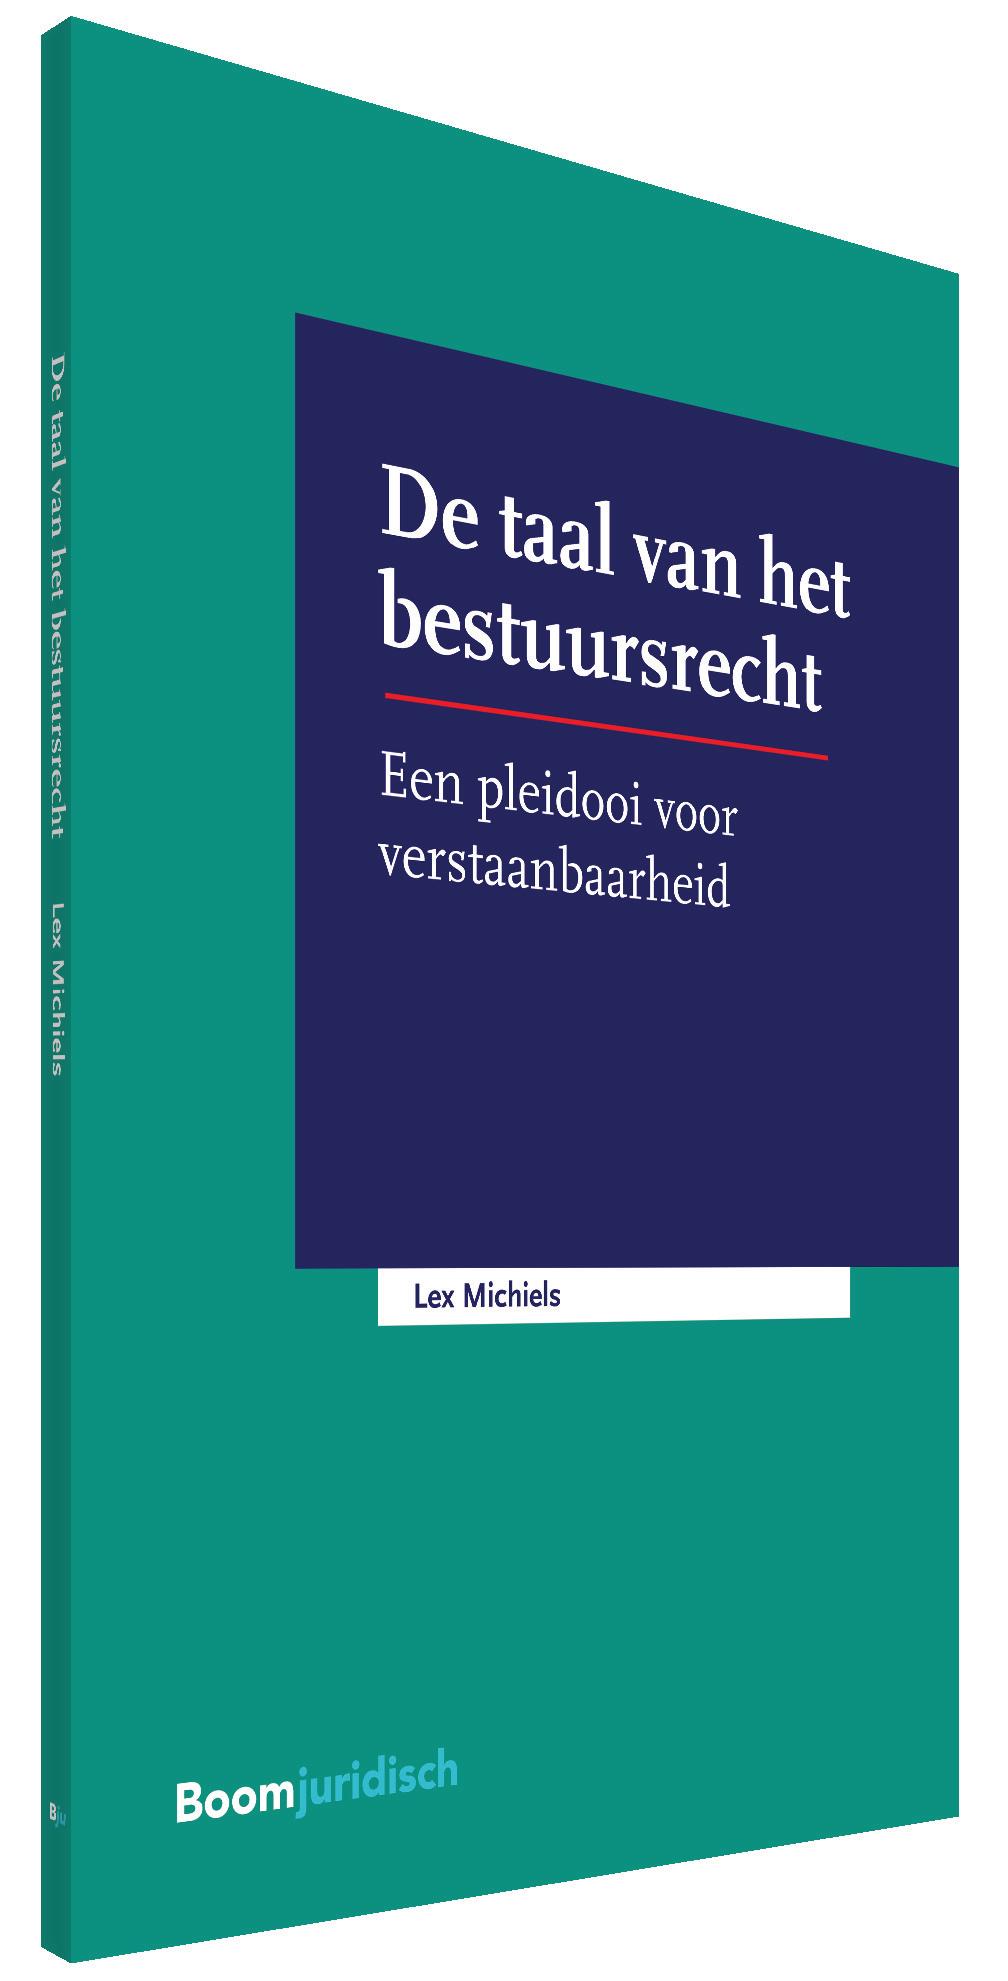 www.boomjuridisch.nl EEN PLEIDOOI VOOR VERSTAANBAARHEID IN HET BESTUURSRECHT Voor het recht is een goed en nauwkeurig gebruik van de taal essentieel.